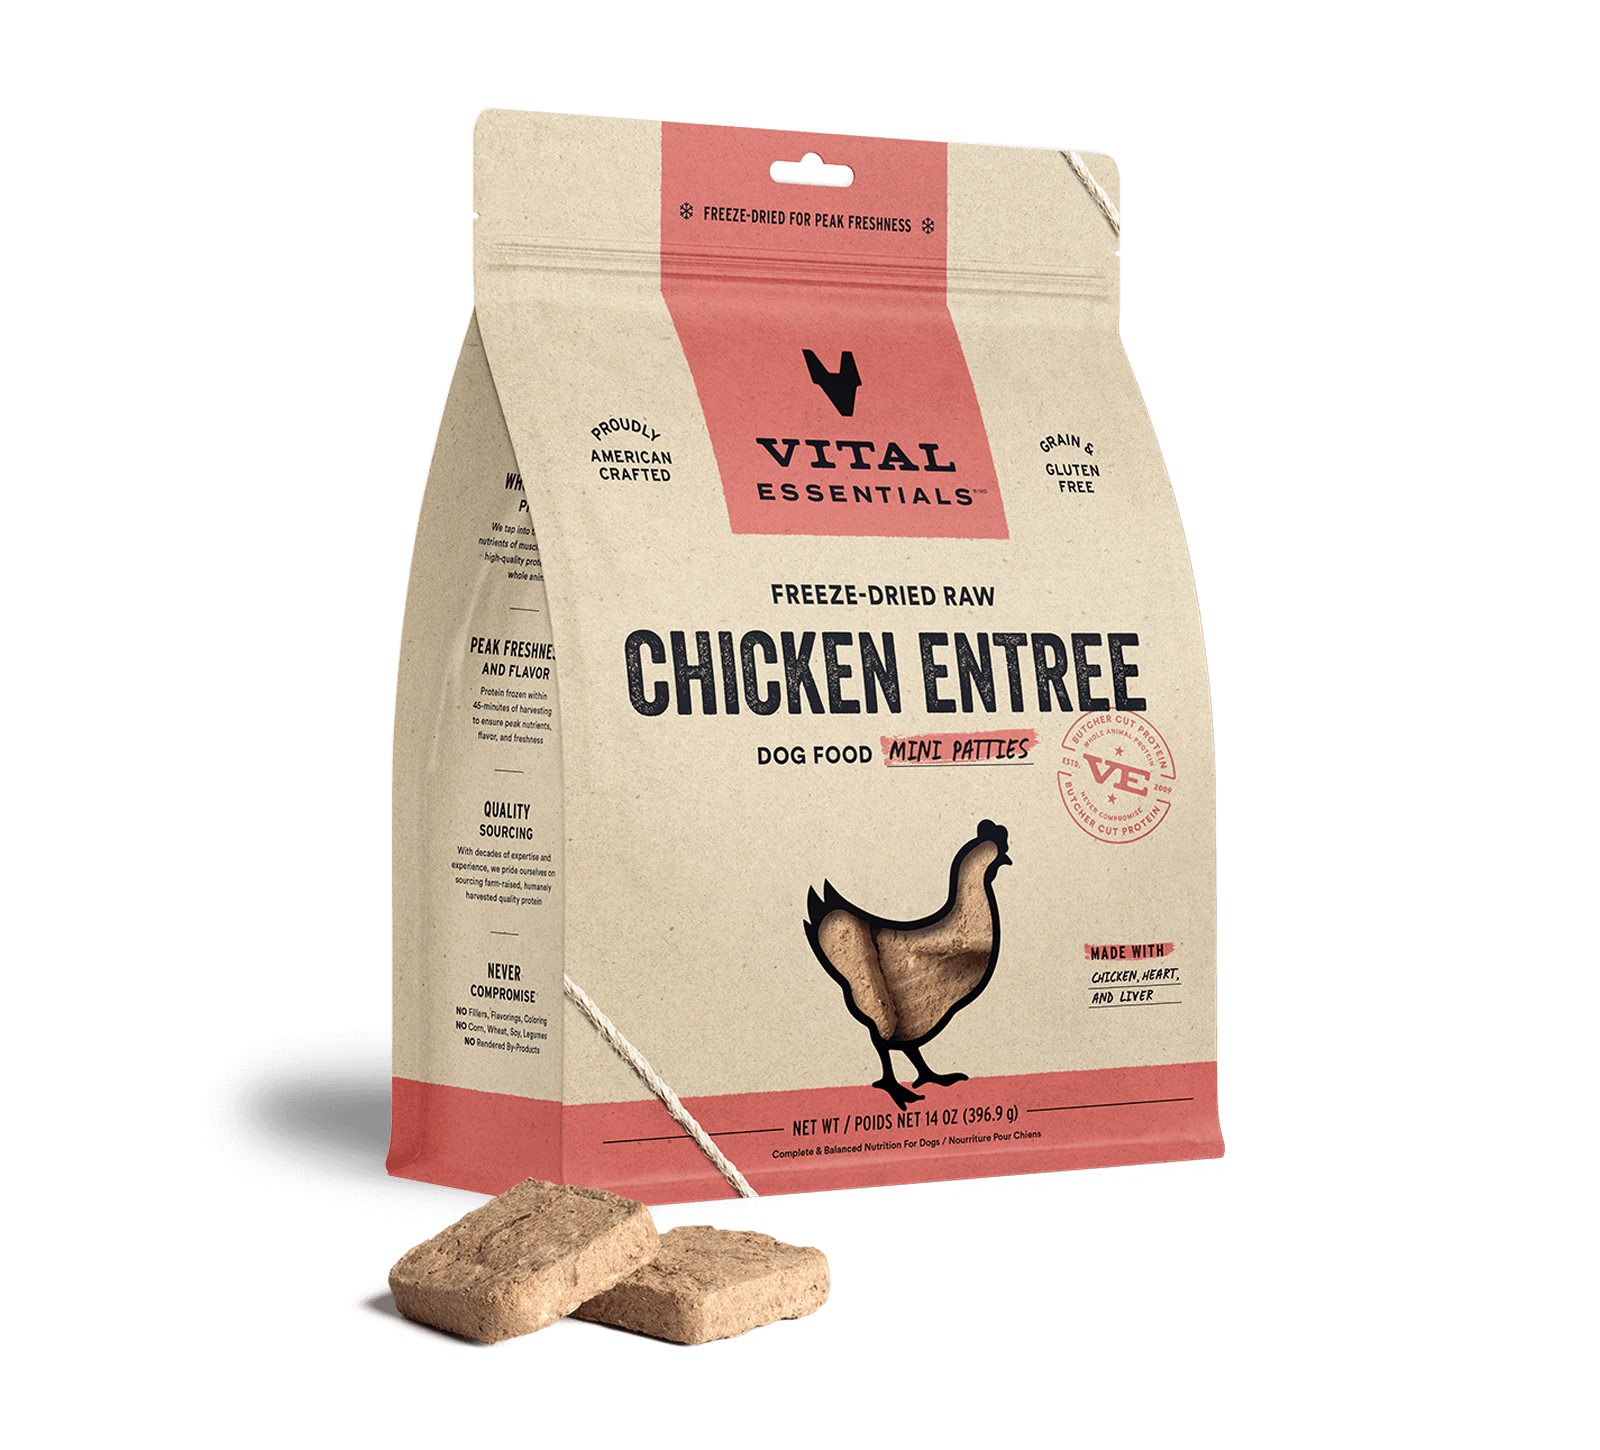 Vital Essentials Freeze-Dried Raw Chicken Entree Dog Food Mini Patties, 14 oz - Health/First Aid